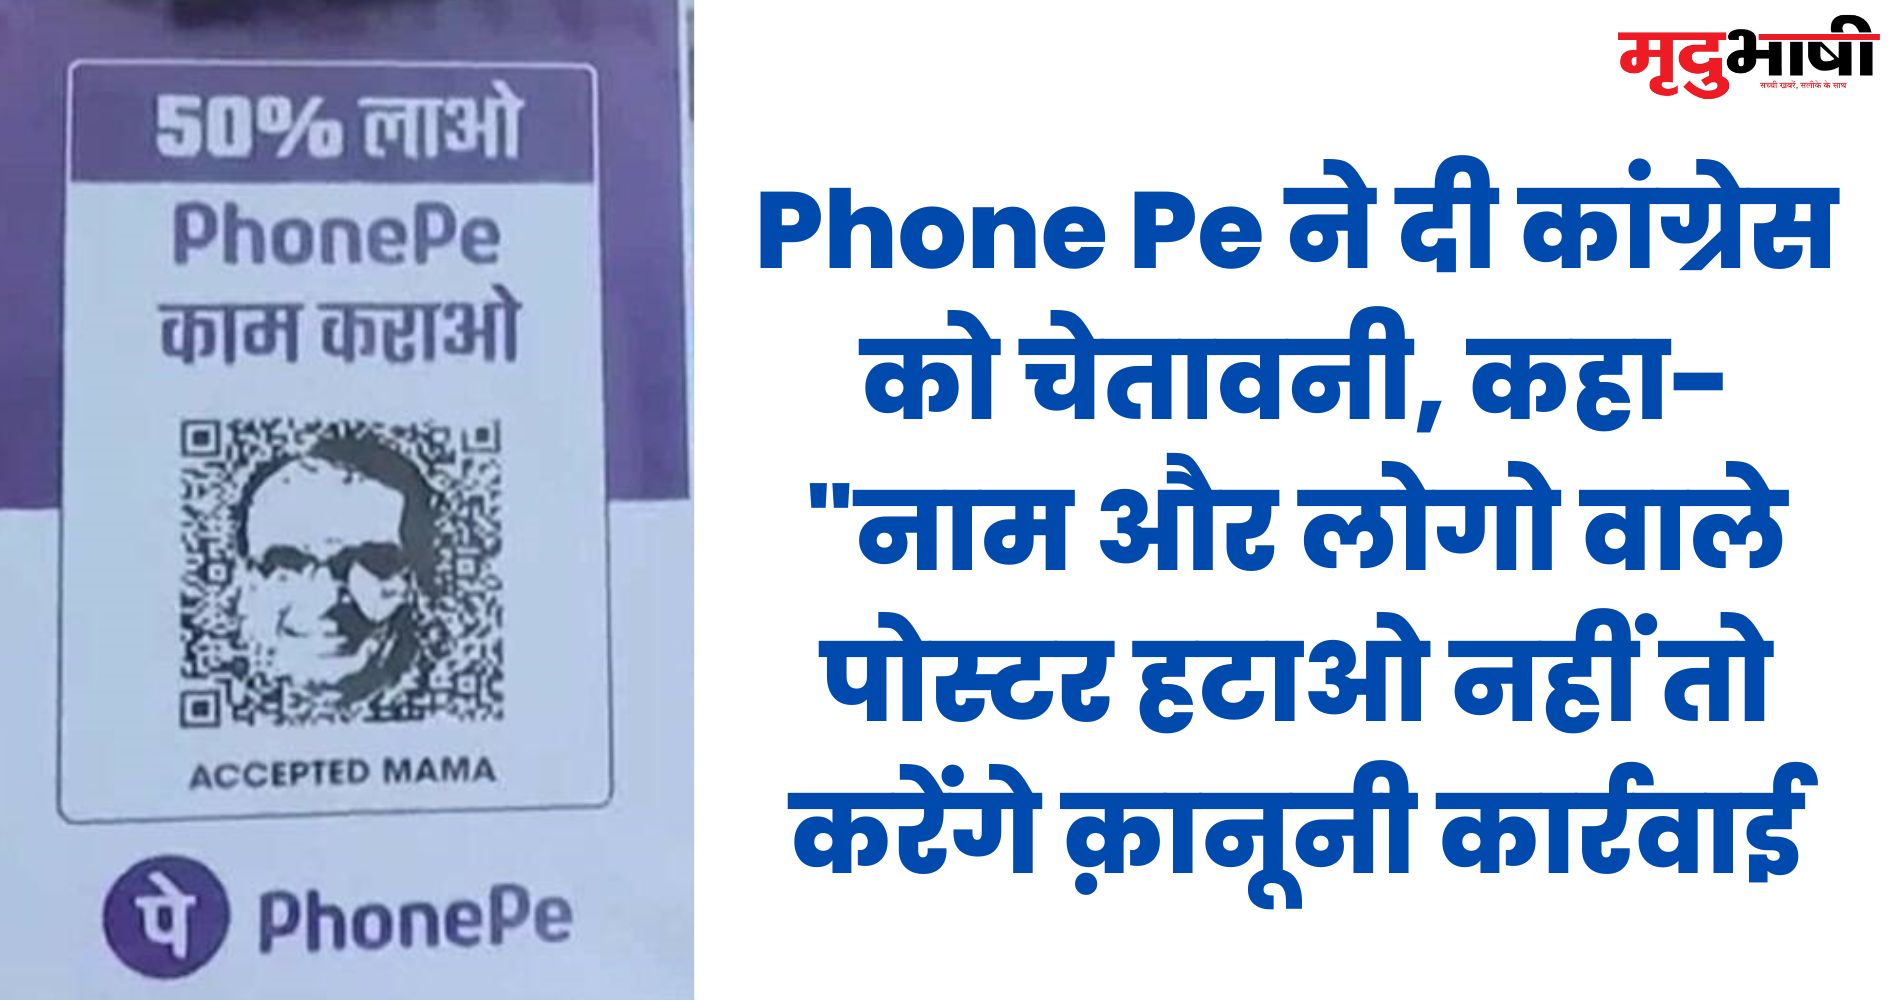 Phone Pe ने दी कांग्रेस को चेतावनी, कहा- नाम और लोगो वाले पोस्टर हटाओ नहीं तो करेंगे क़ानूनी कार्रवाई